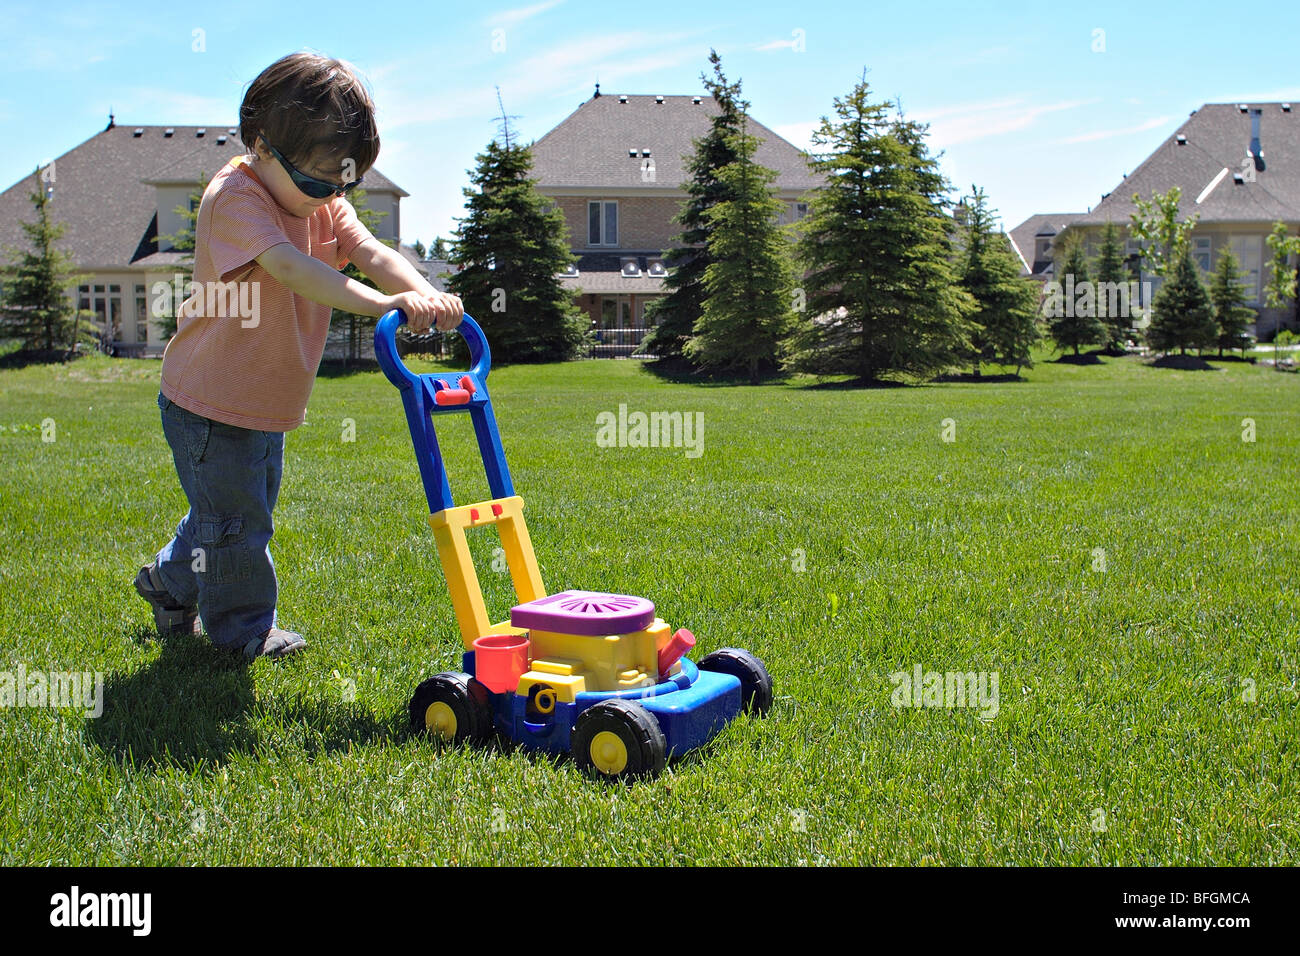 Kleiner junge Rasen zu mähen, mit Spielzeug Mäher, King City, Ontario Stockfoto